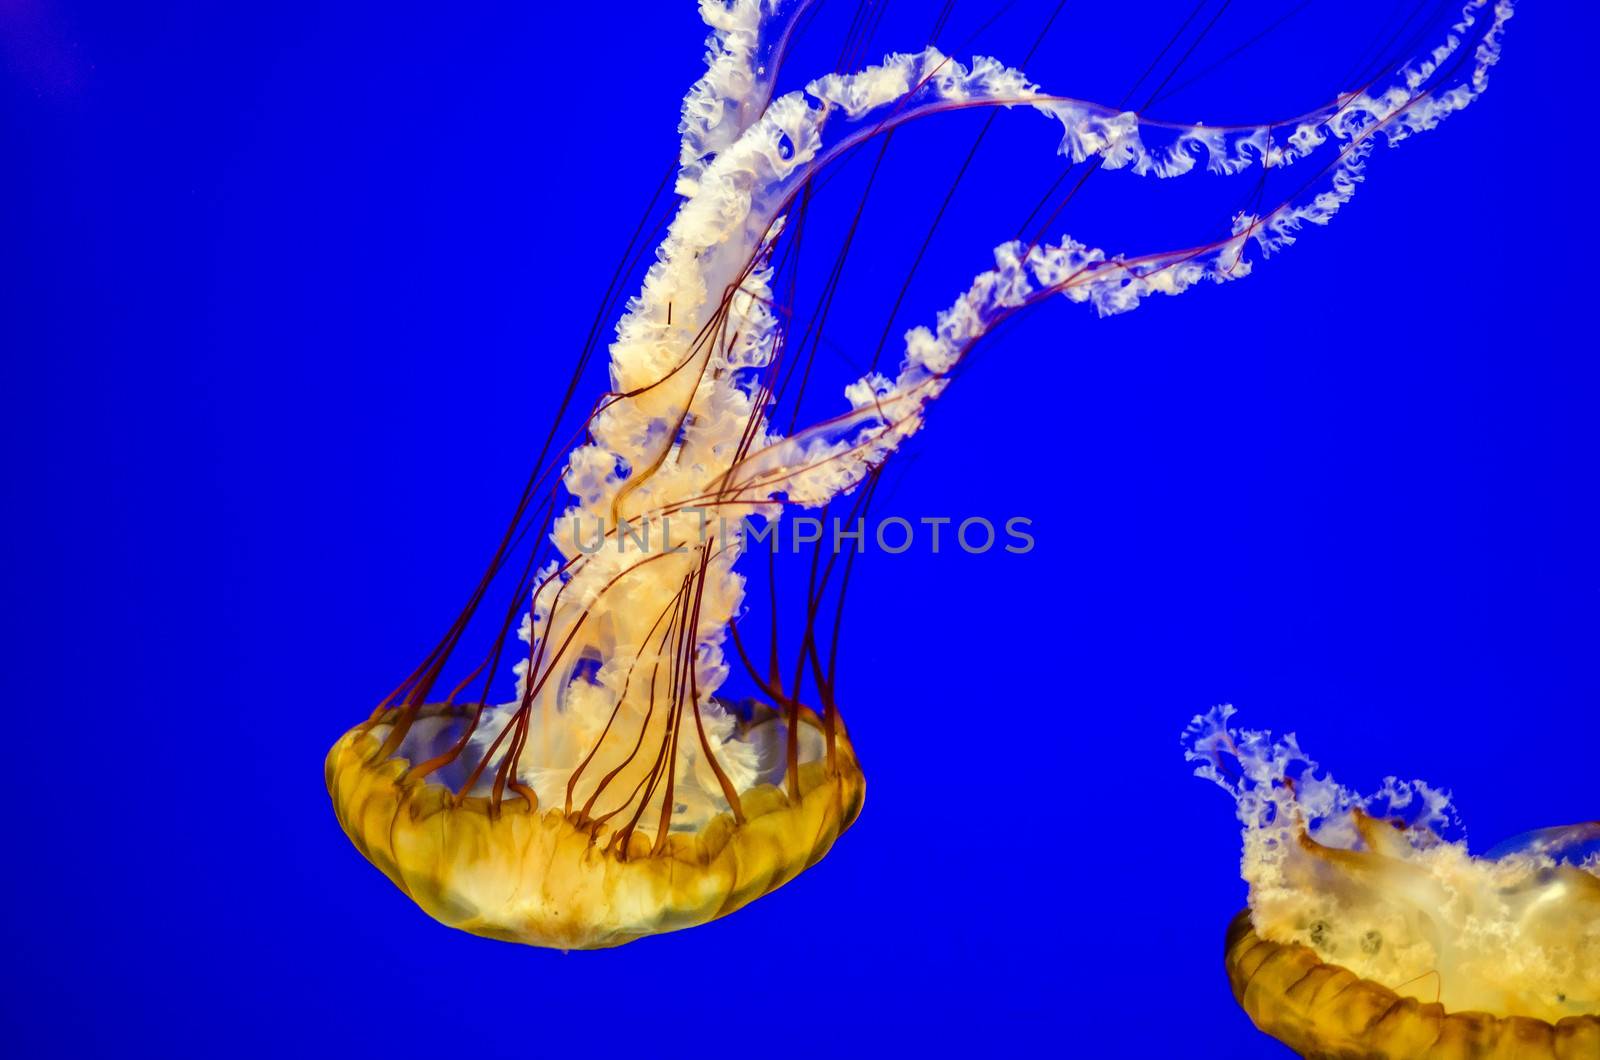 Sea Nettle Jellyfish by jkraft5